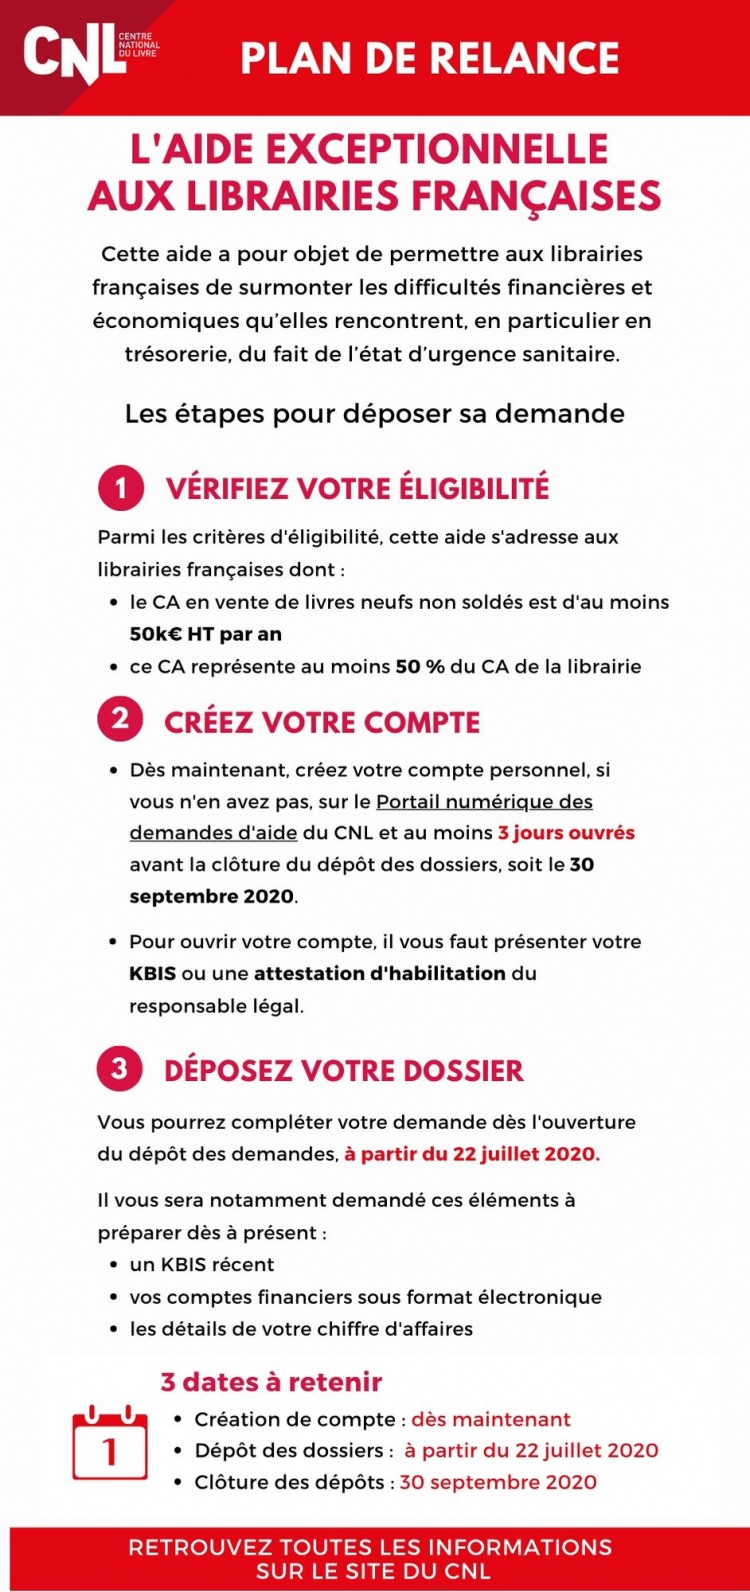 Les étapes de dépôt des dossiers _ aide exceptionnelle du CNL aux librairies françaises.jpg